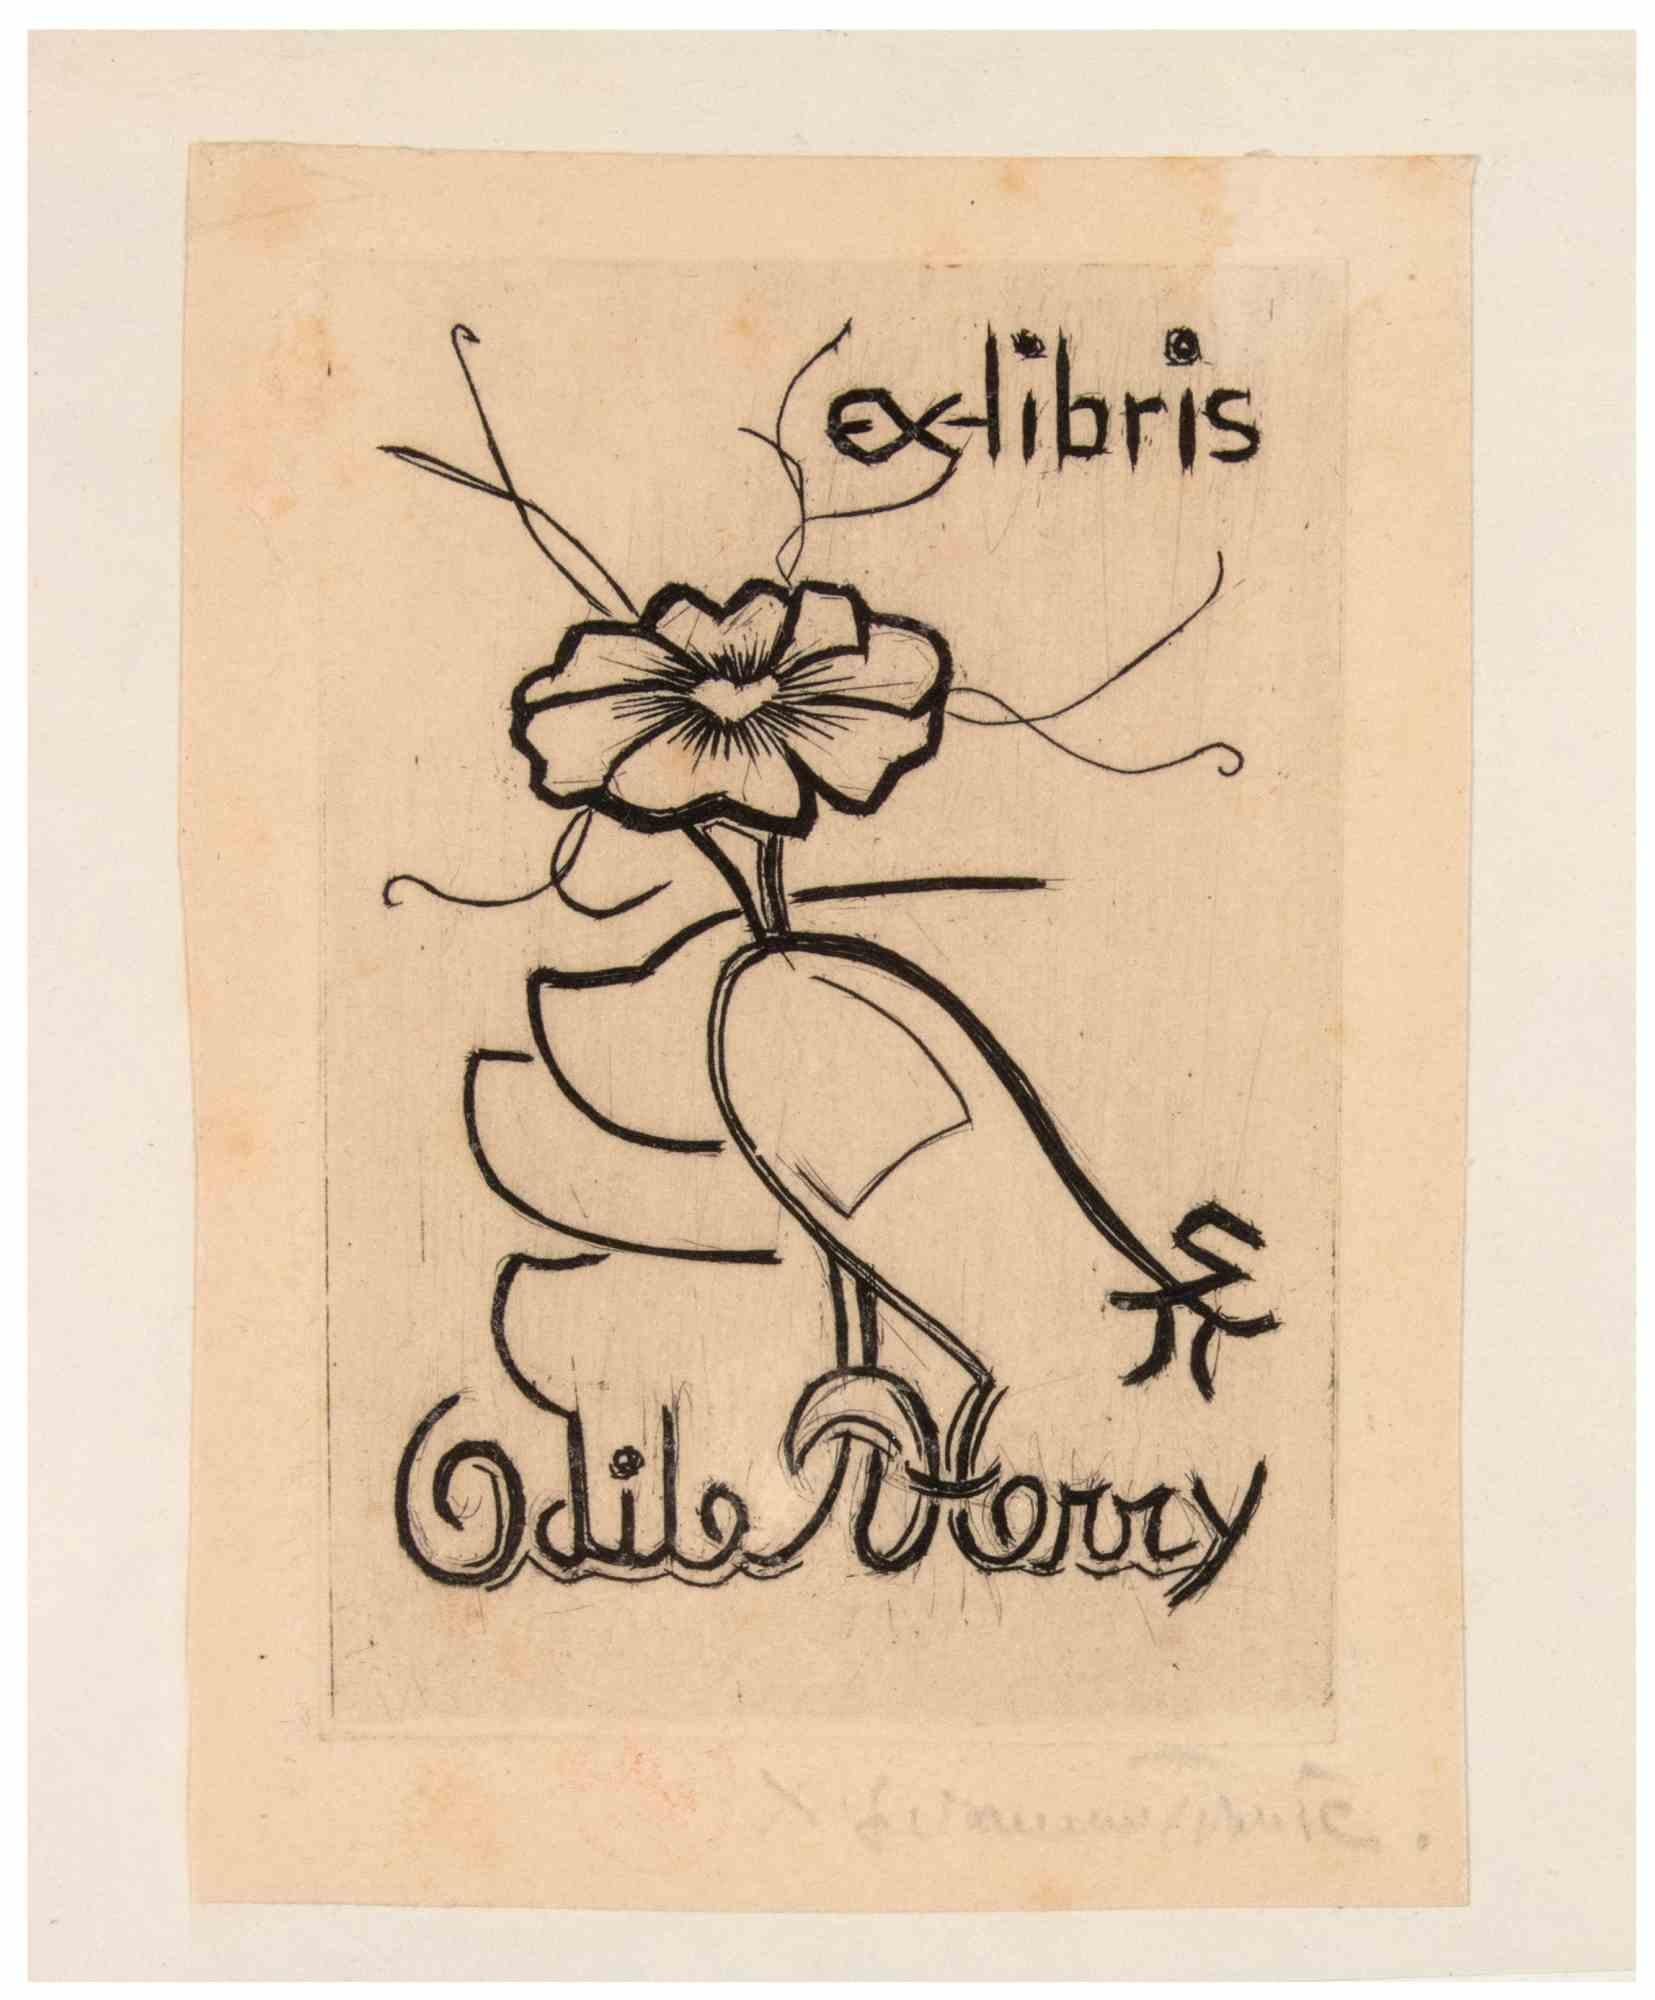 Ex Libris Odile Herry ist eine von Suzanne Tourte (1904-1979) realisierte Radierung.

Guter Zustand auf leicht vergilbtem Papier, mit einem blauen Passepartout aus Karton (27x21,5 cm).

Signiert in der rechten unteren Ecke.